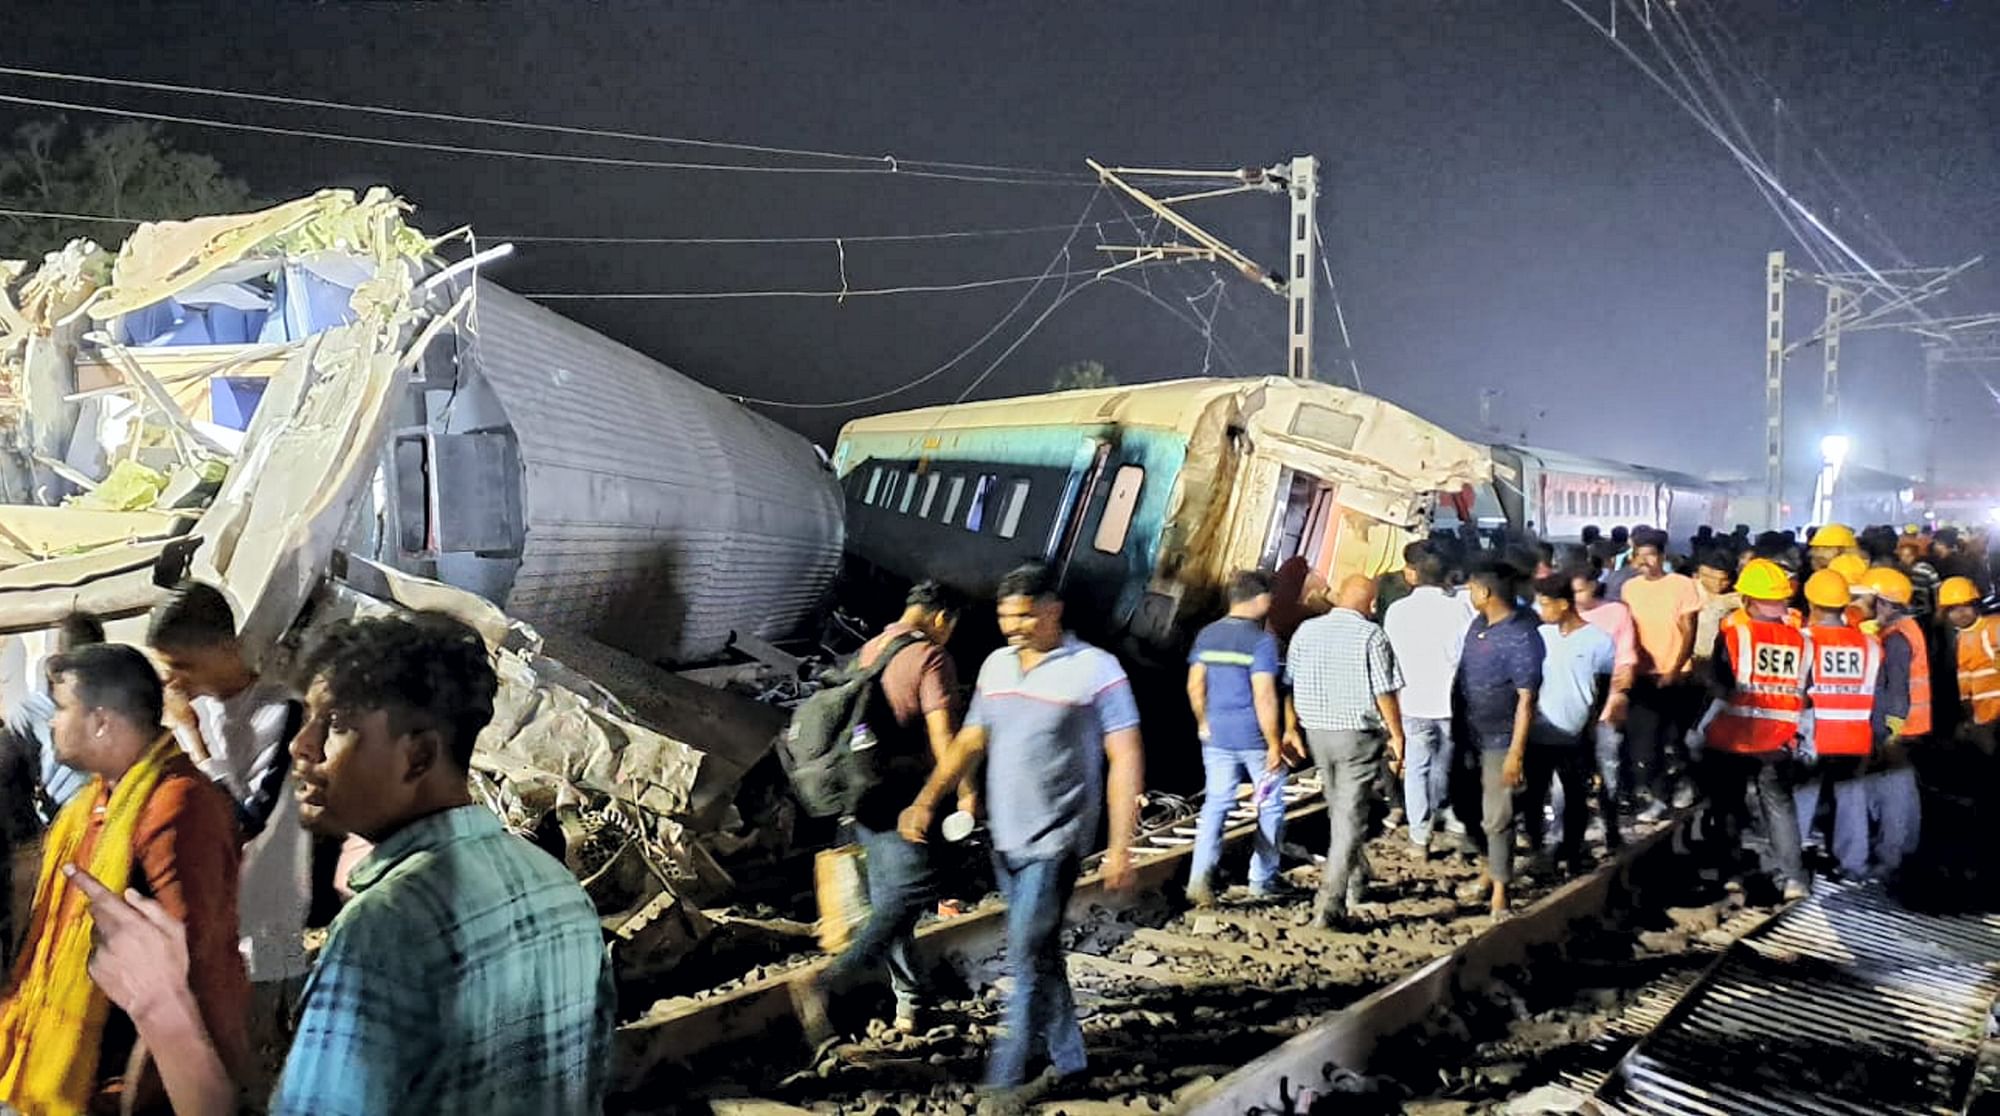 <div class="paragraphs"><p>'ट्रेन से बाहर आया, चारों ओर शरीर के अंग बिखरे थे'- ओडिशा ट्रेन हादसे पर चश्मदीद</p></div>